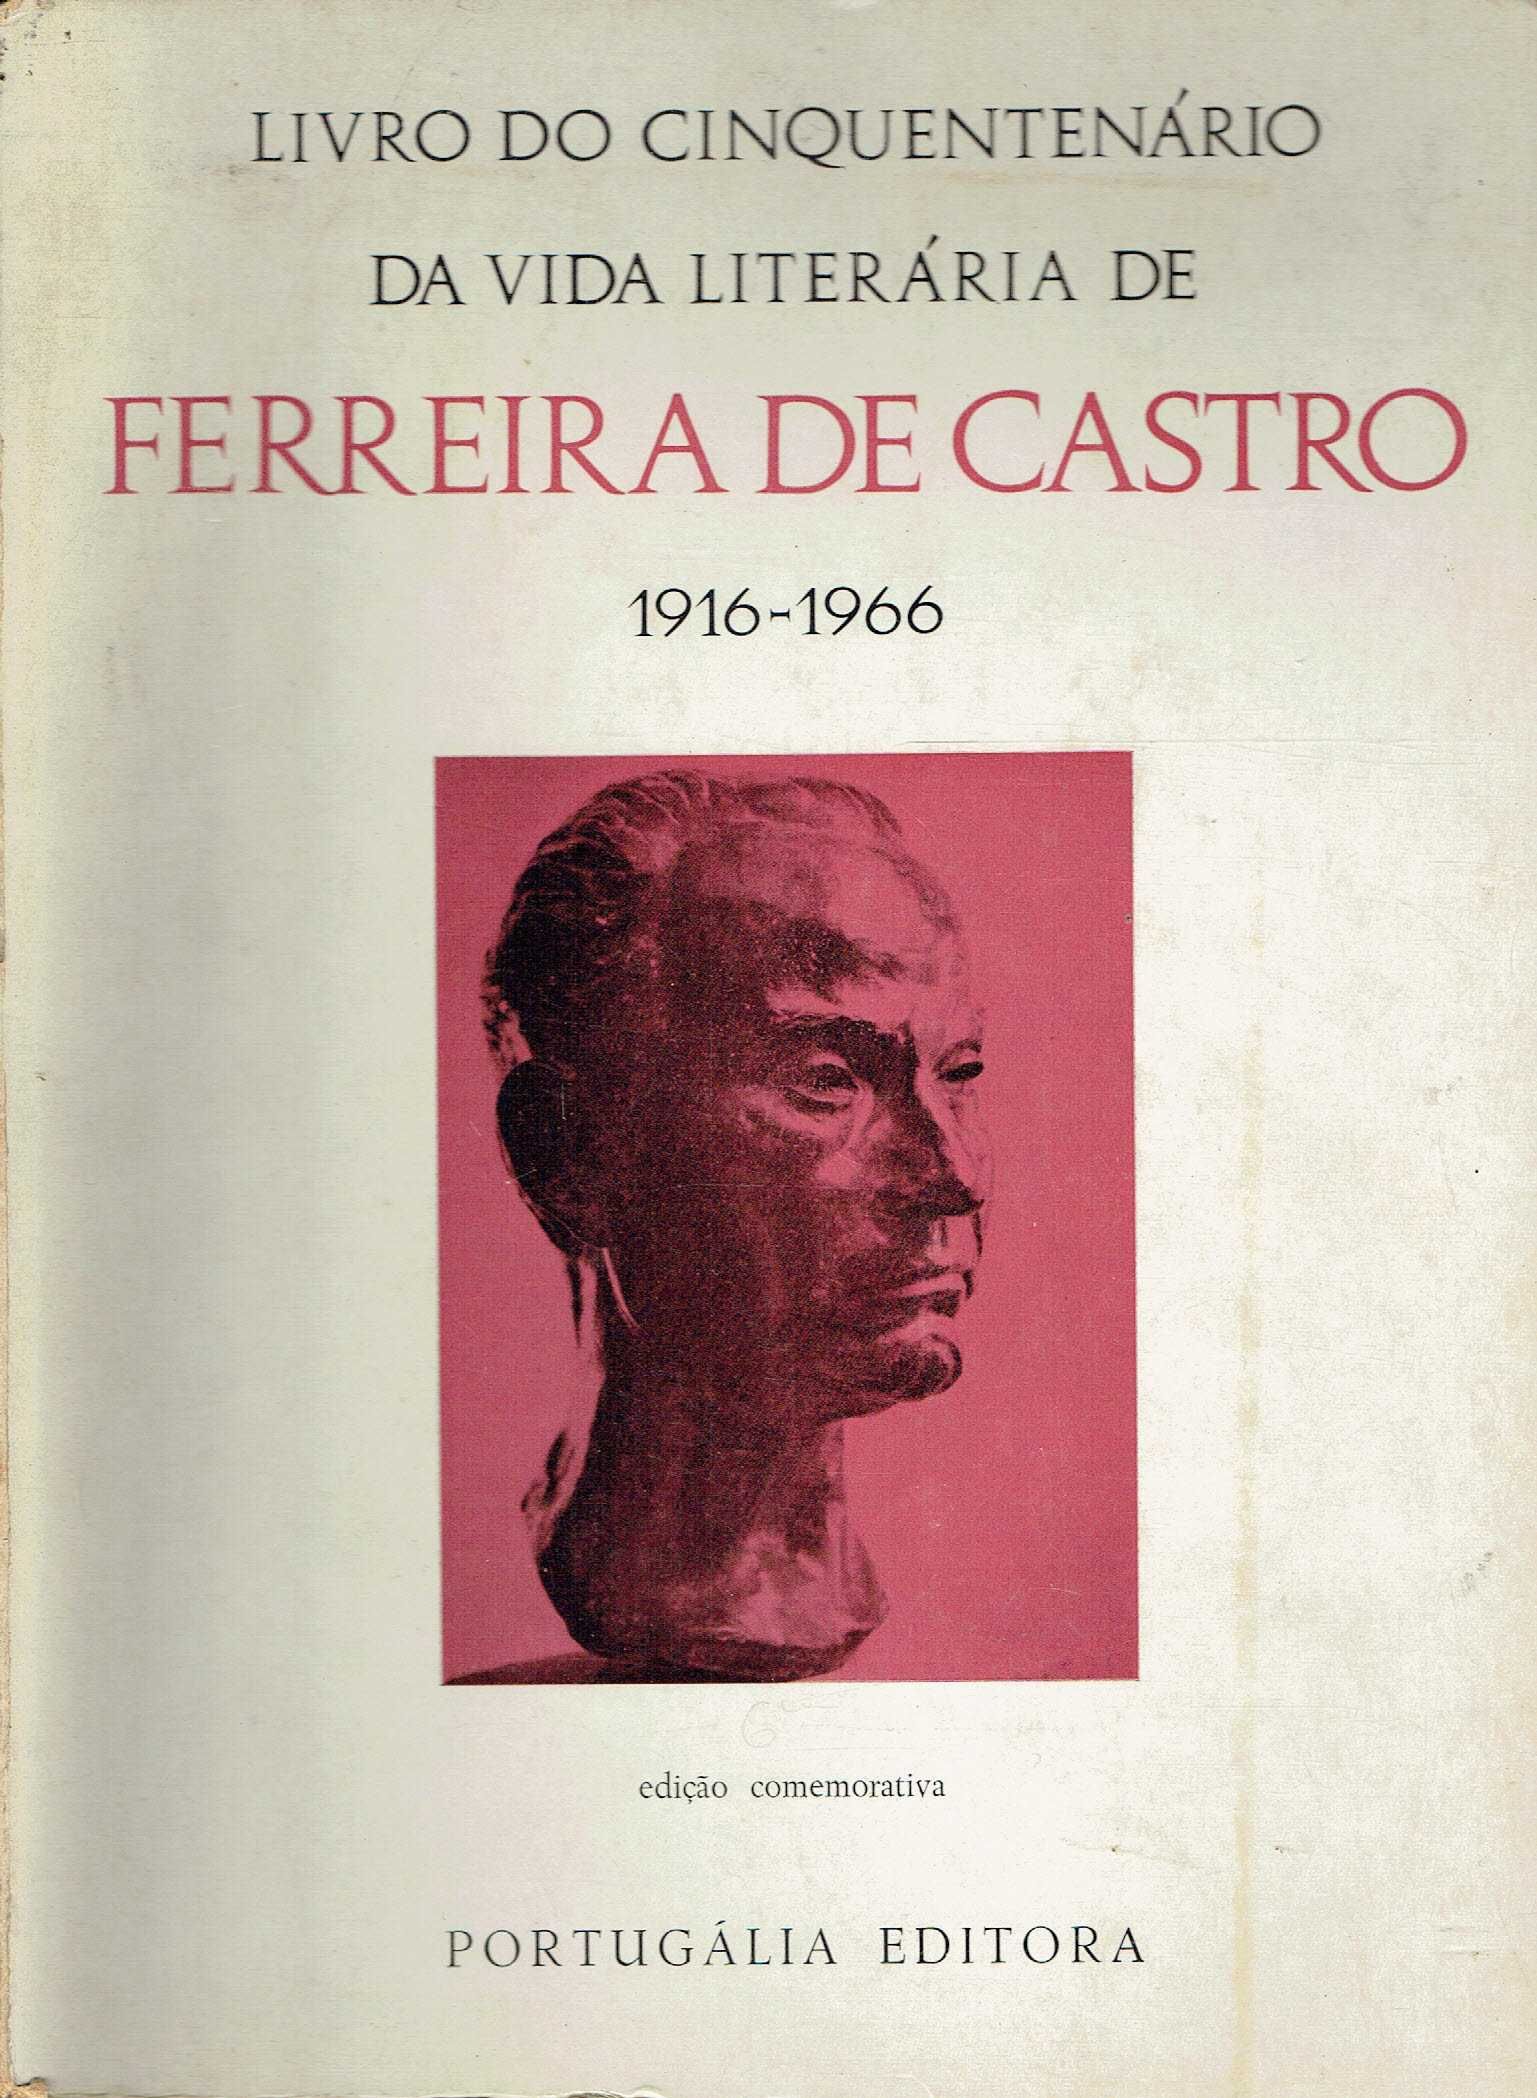 2134

Livro do cinquentenário da vida literária de FERREIRA DE CASTRO